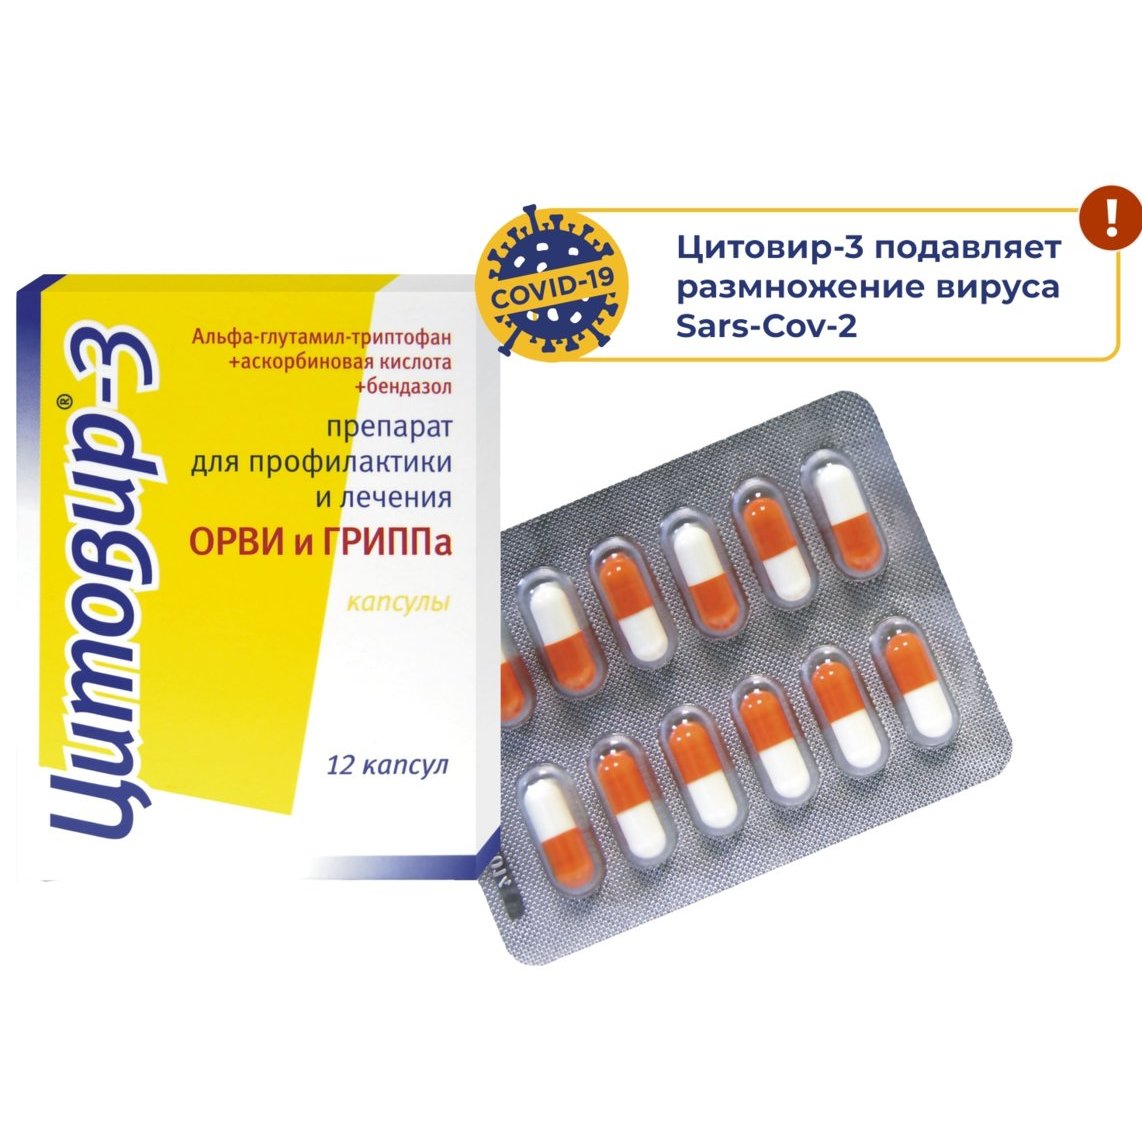 Цитовир-3 капсулы 12 шт. от 315 ₽ в аптеках Кургана | Мегаптека